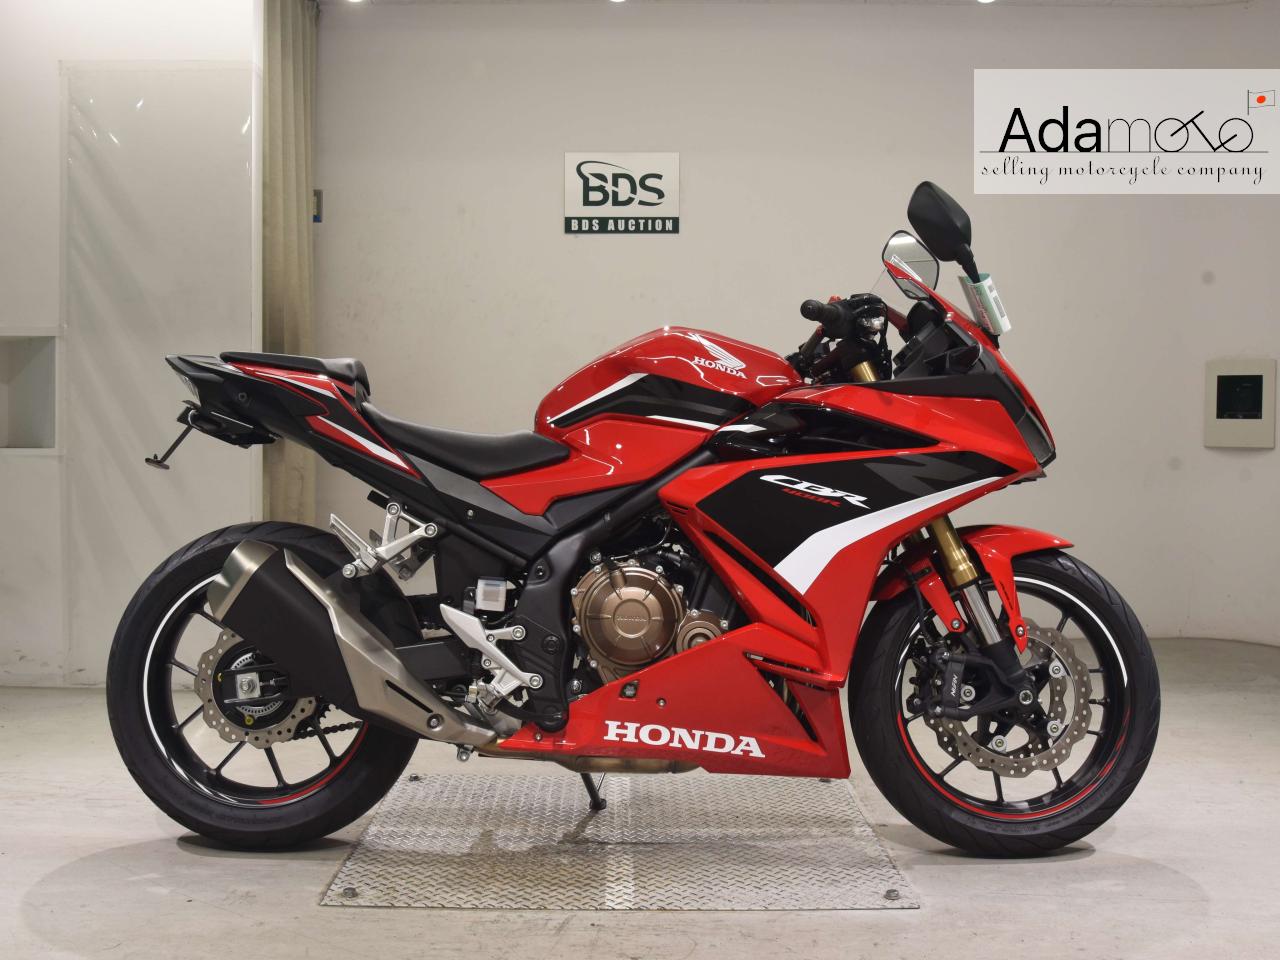 Honda CBR400R-2 - Adamoto - Motorcycles from Japan